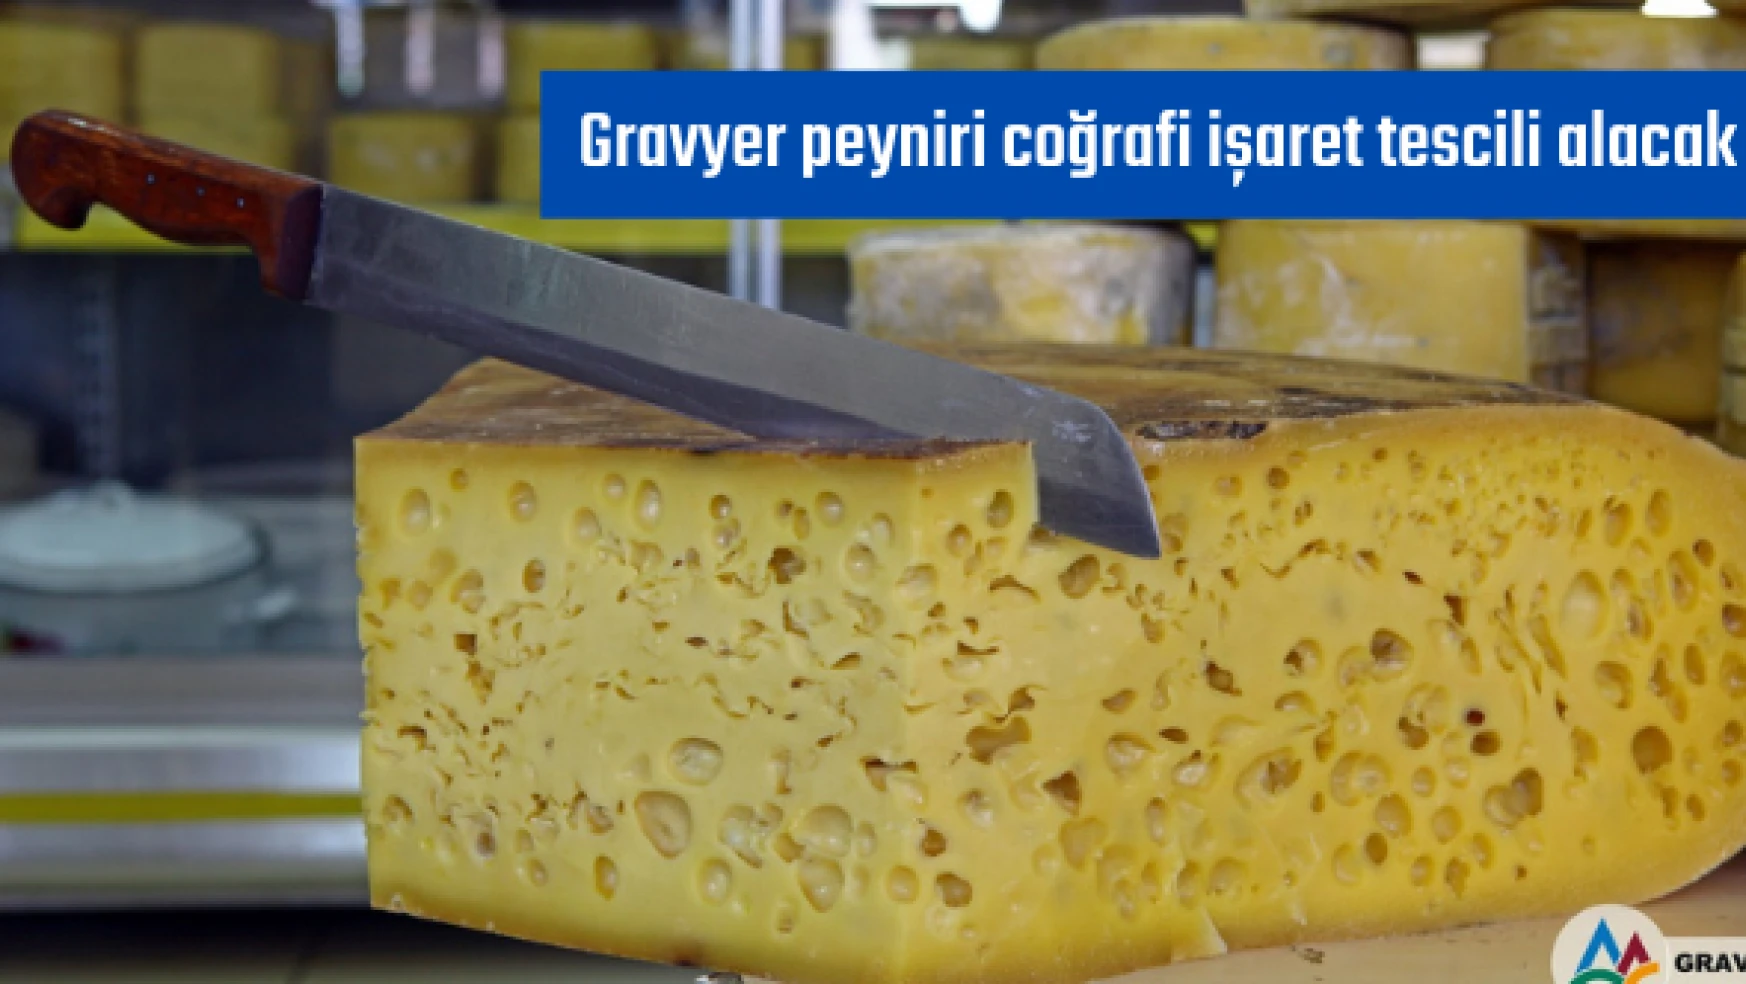 Gravyer peyniri coğrafi işaret tescili alacak